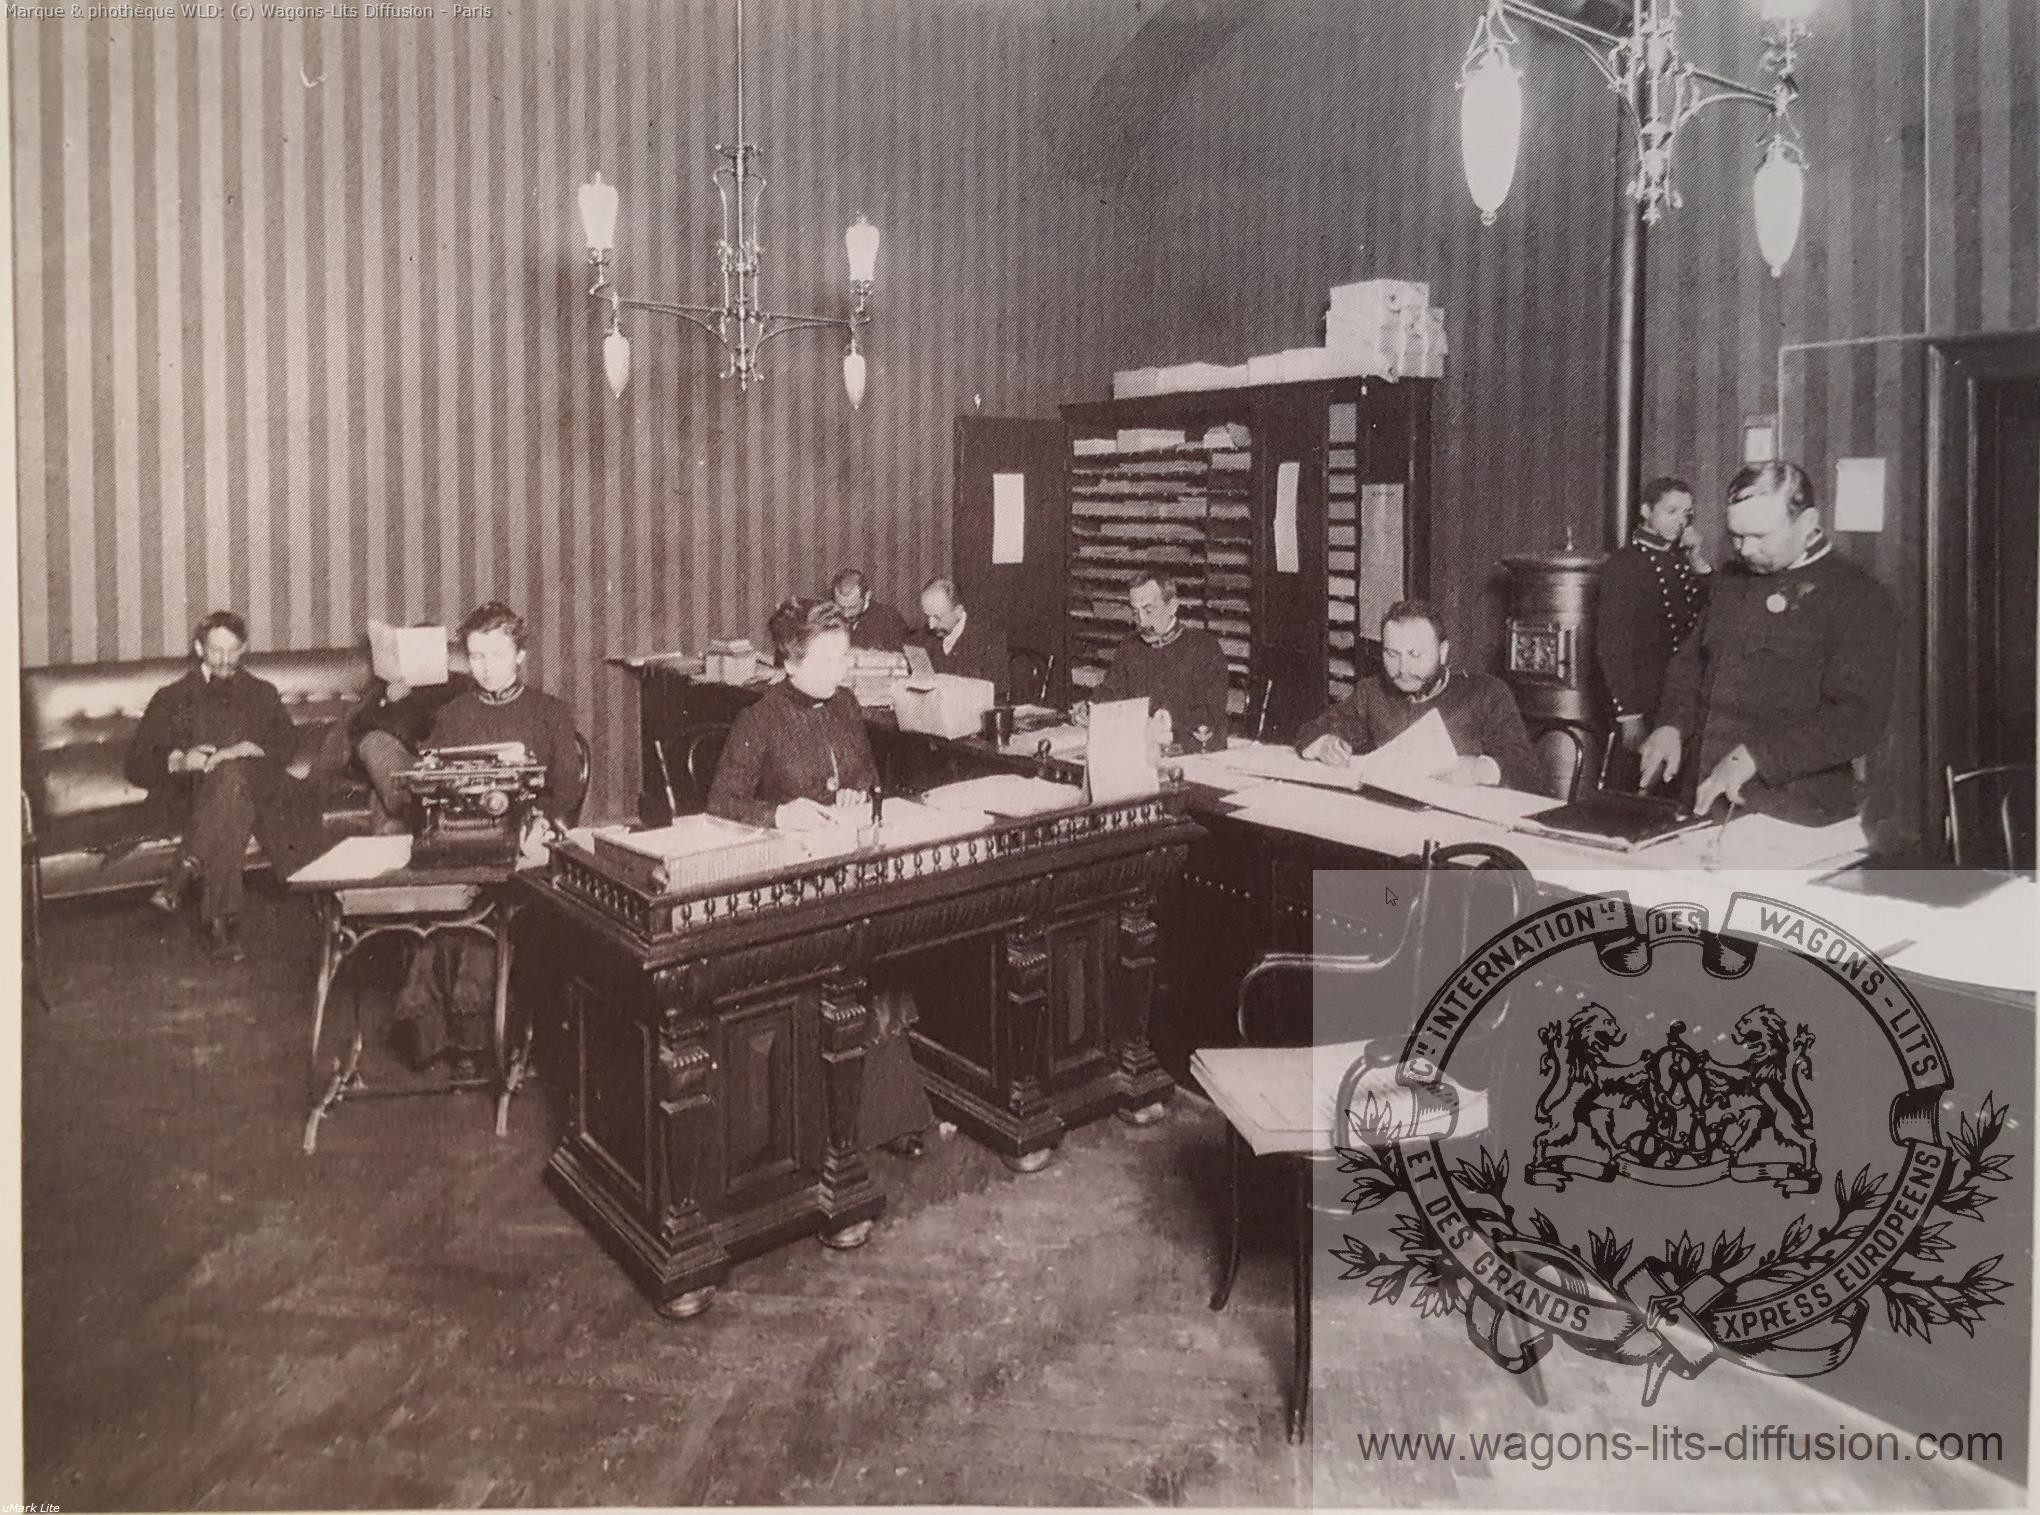 Wl agence budapest 1900